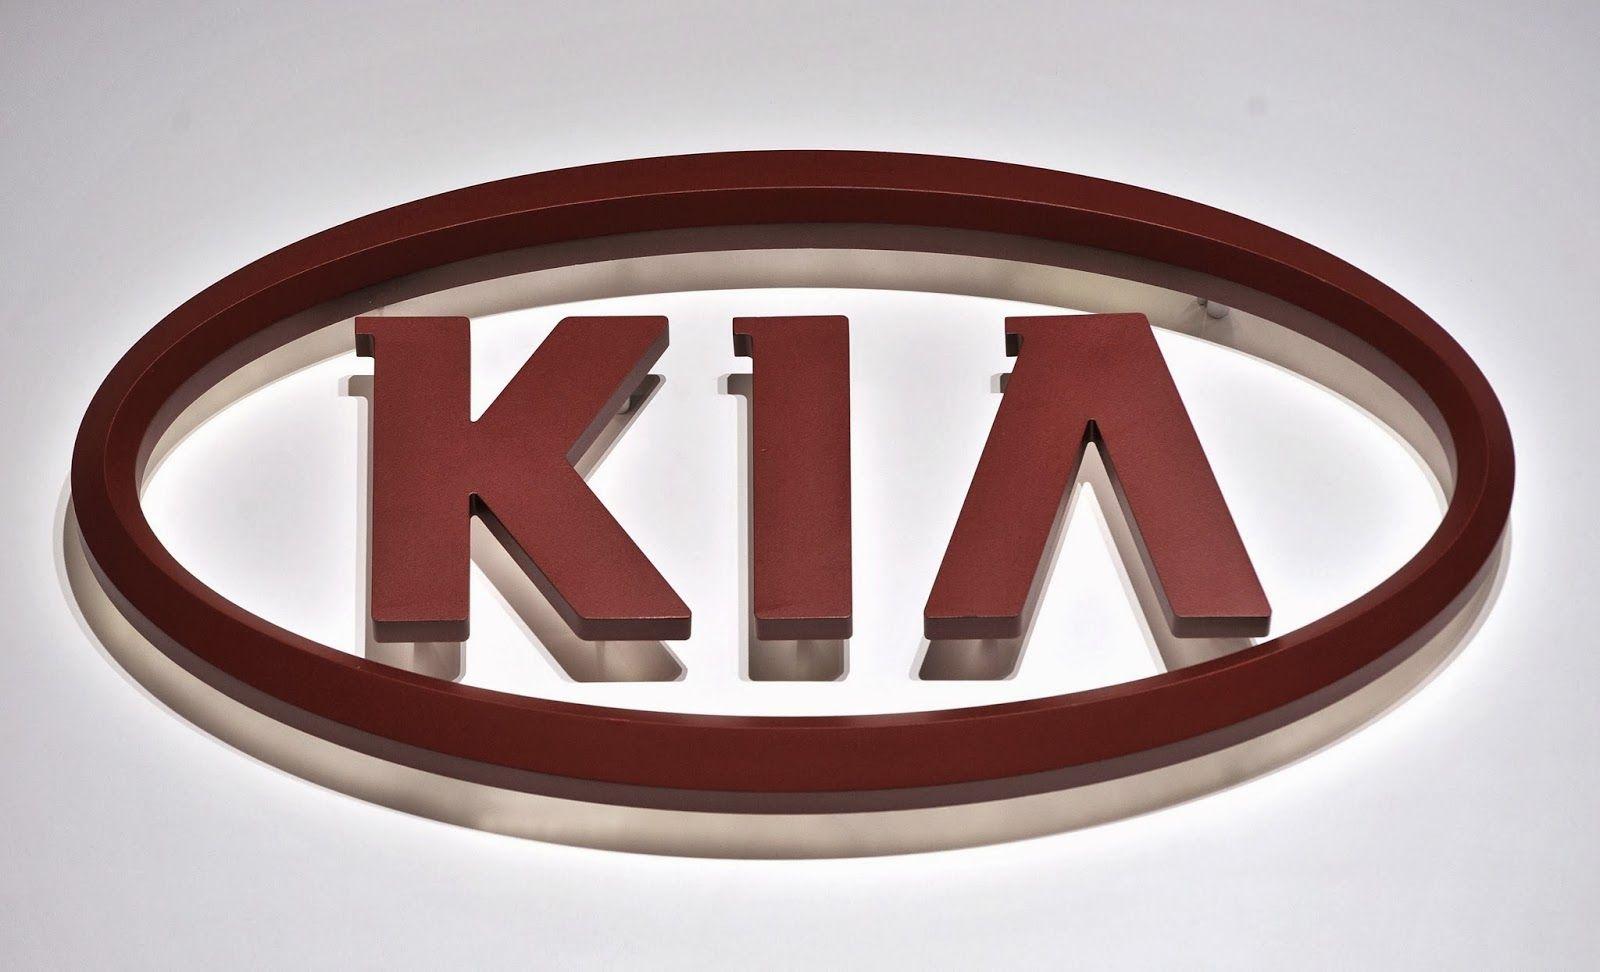 Red Oval Company Logo - Kia Logo, Kia Car Symbol Meaning and History | Car Brand Names.com